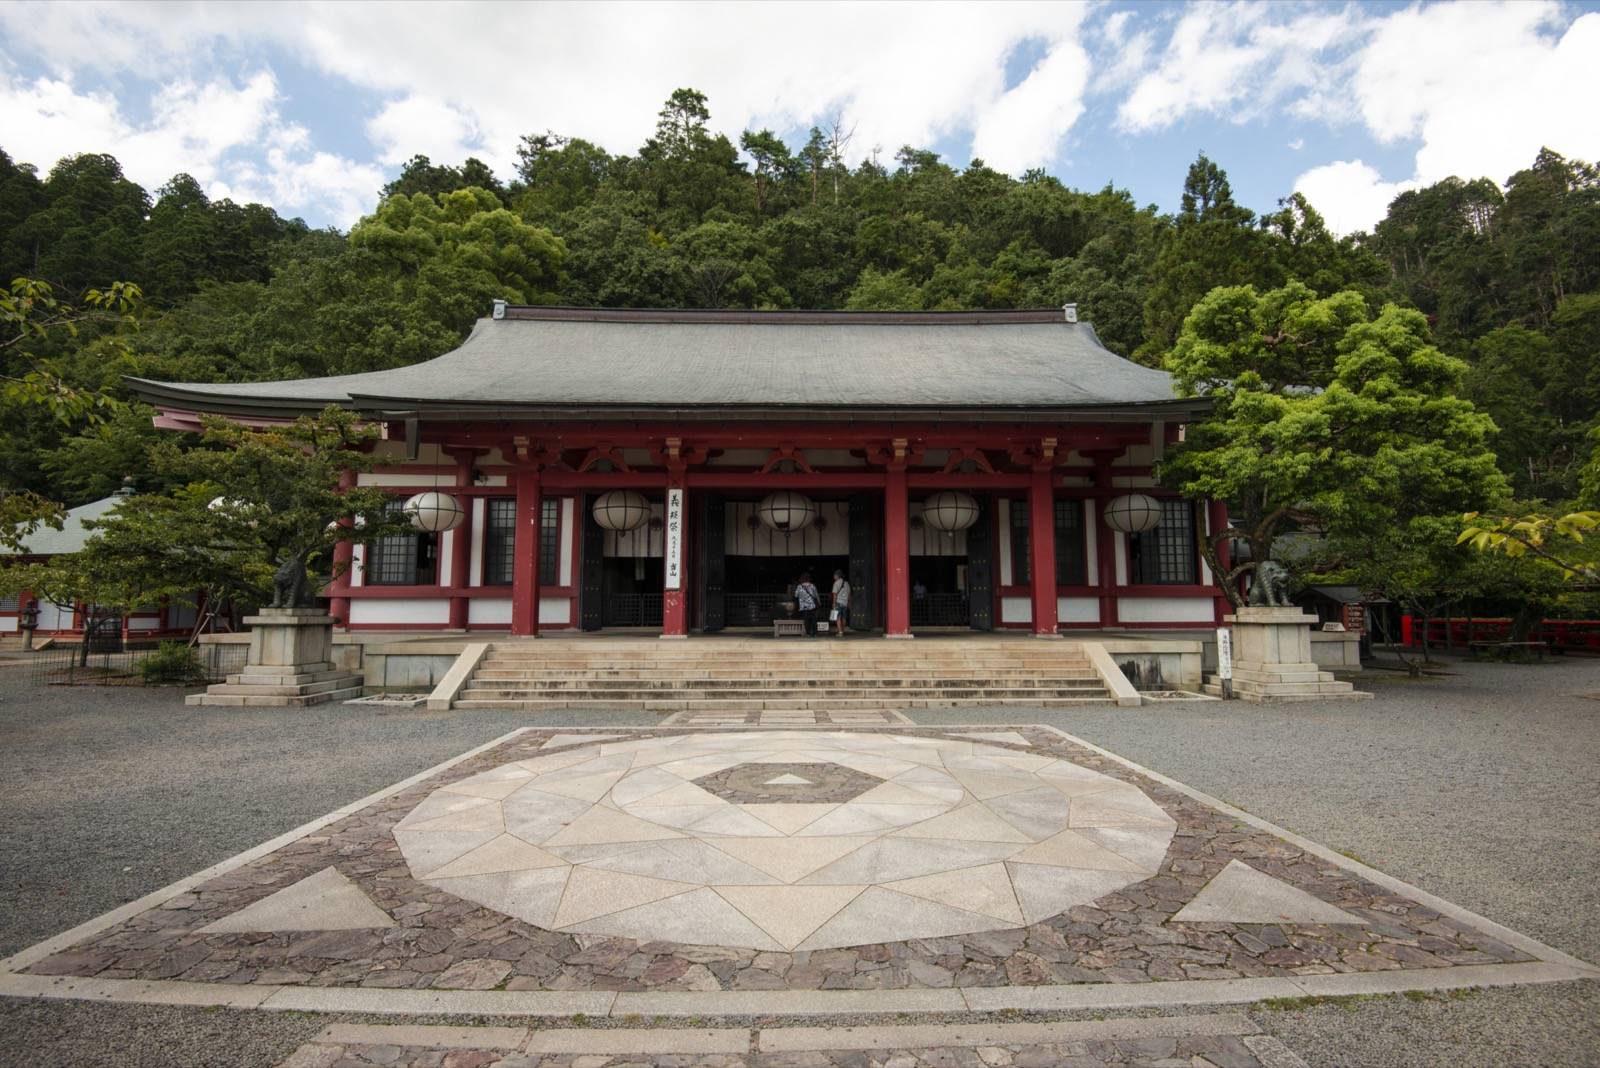 Photo of Kuramadera Temple, Japan (Kurama-dera main hall by Maarten Heerlien)